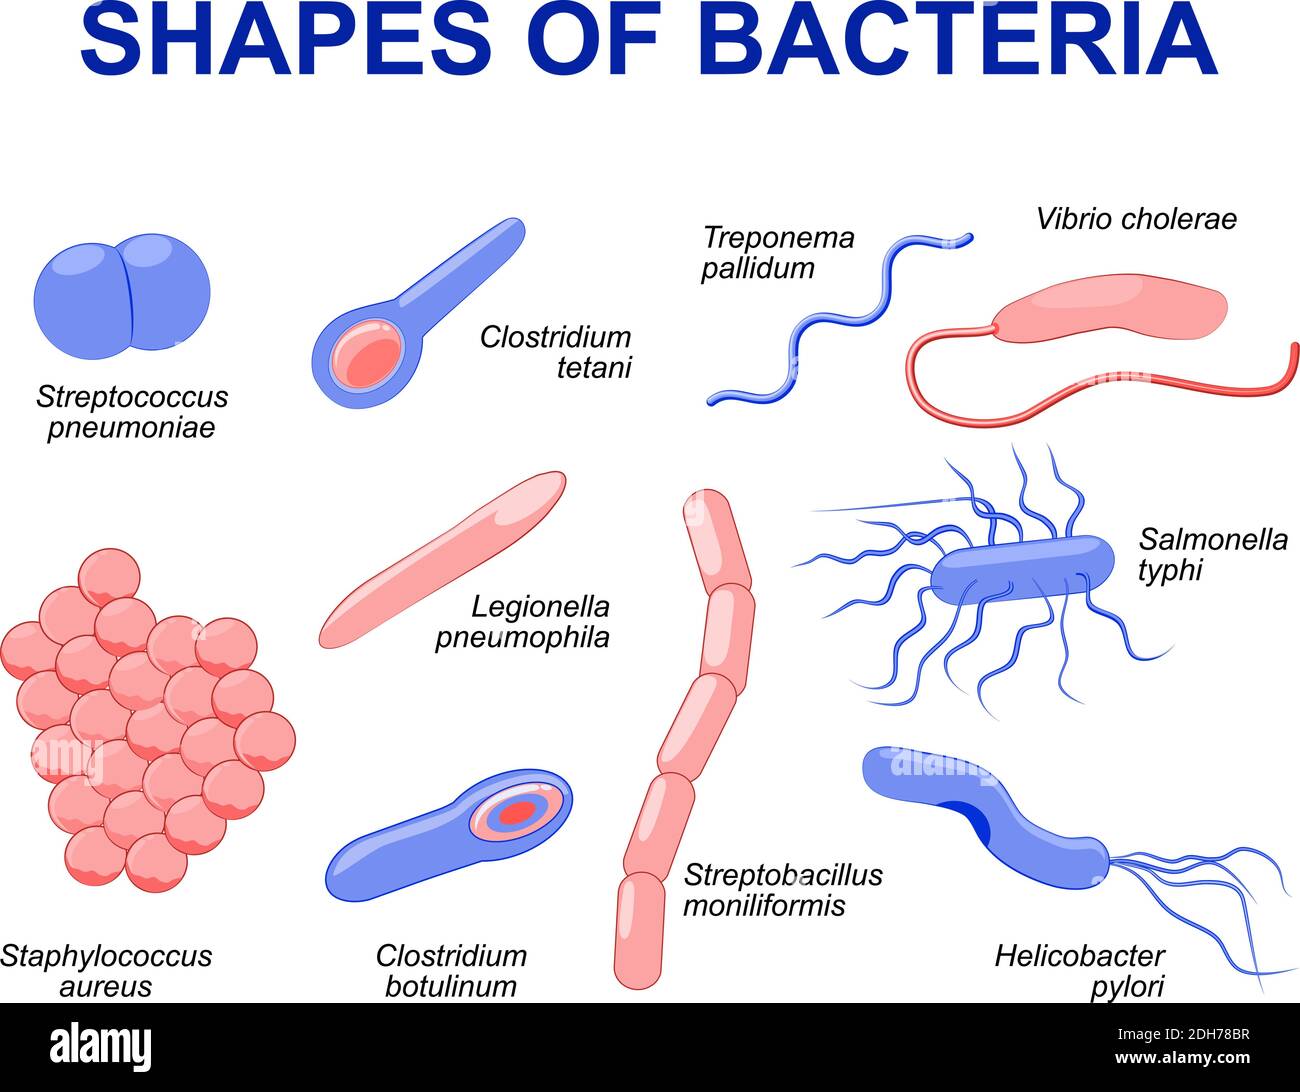 Batteri comuni che infettano l'uomo. I batteri di illustrazione di vettore sono classificati in 5 gruppi secondo la loro forma di base: Sferico (cocchi) Illustrazione Vettoriale